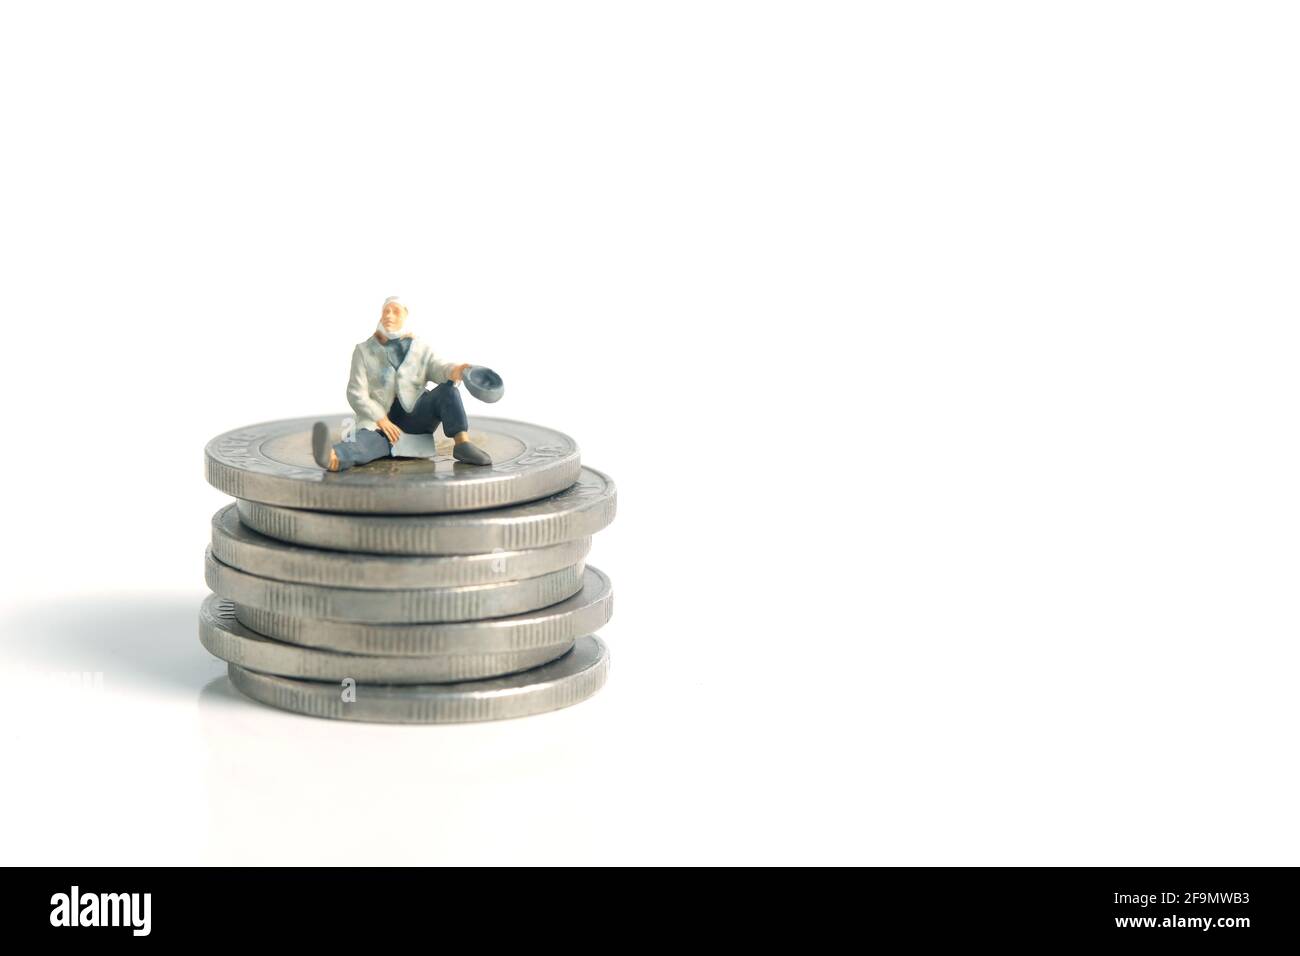 Fotografia di giocattoli in miniatura di persone molto piccole. Un uomo povero o un mendicante siedono sopra la pila di monete di denaro, isolato su sfondo bianco Foto Stock